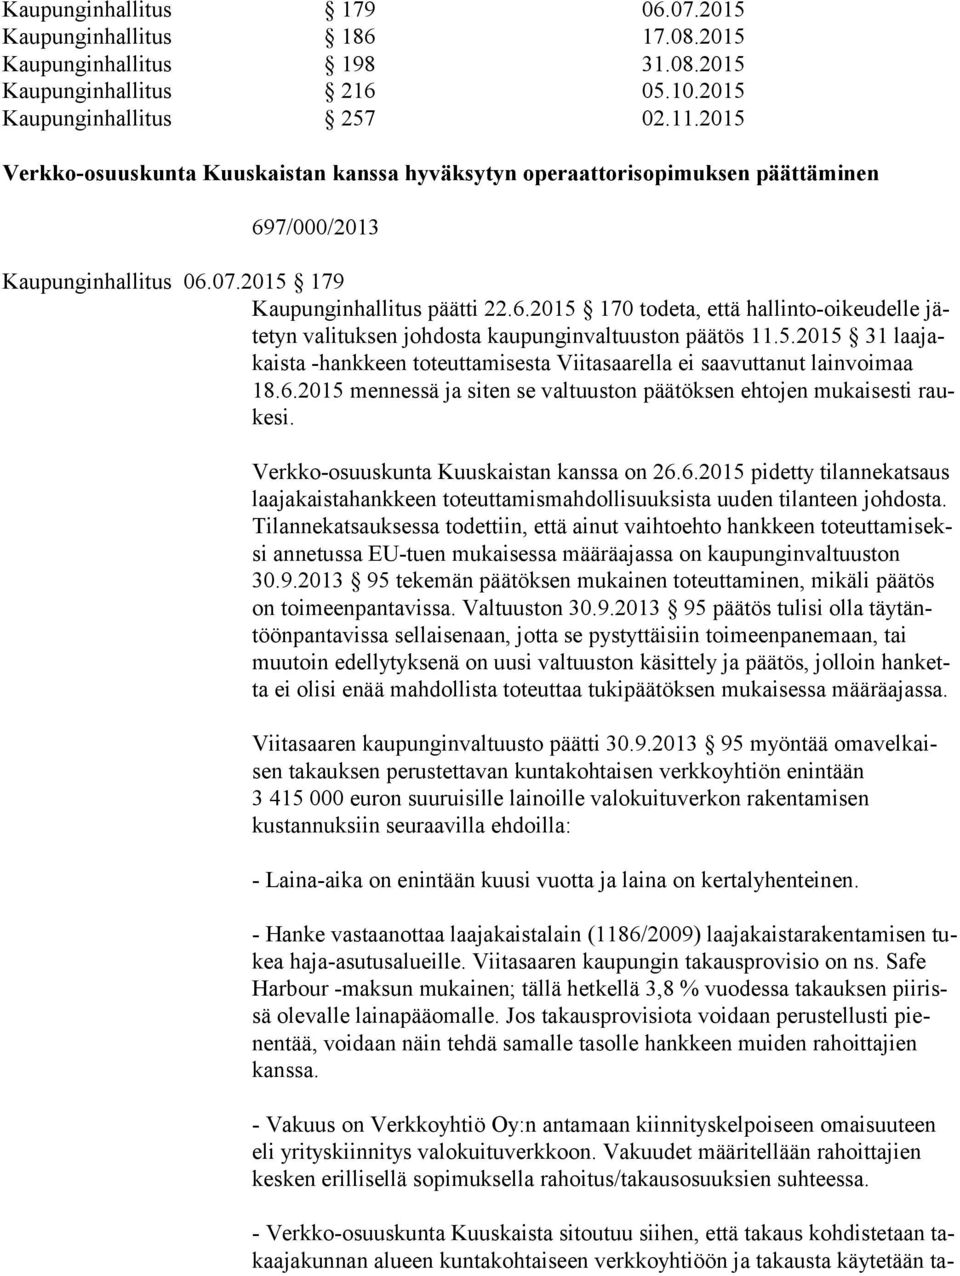 5.2015 31 laa jakais ta -hankkeen toteuttamisesta Viitasaarella ei saavuttanut lainvoimaa 18.6.2015 mennessä ja siten se valtuuston päätöksen ehtojen mukaisesti rauke si.